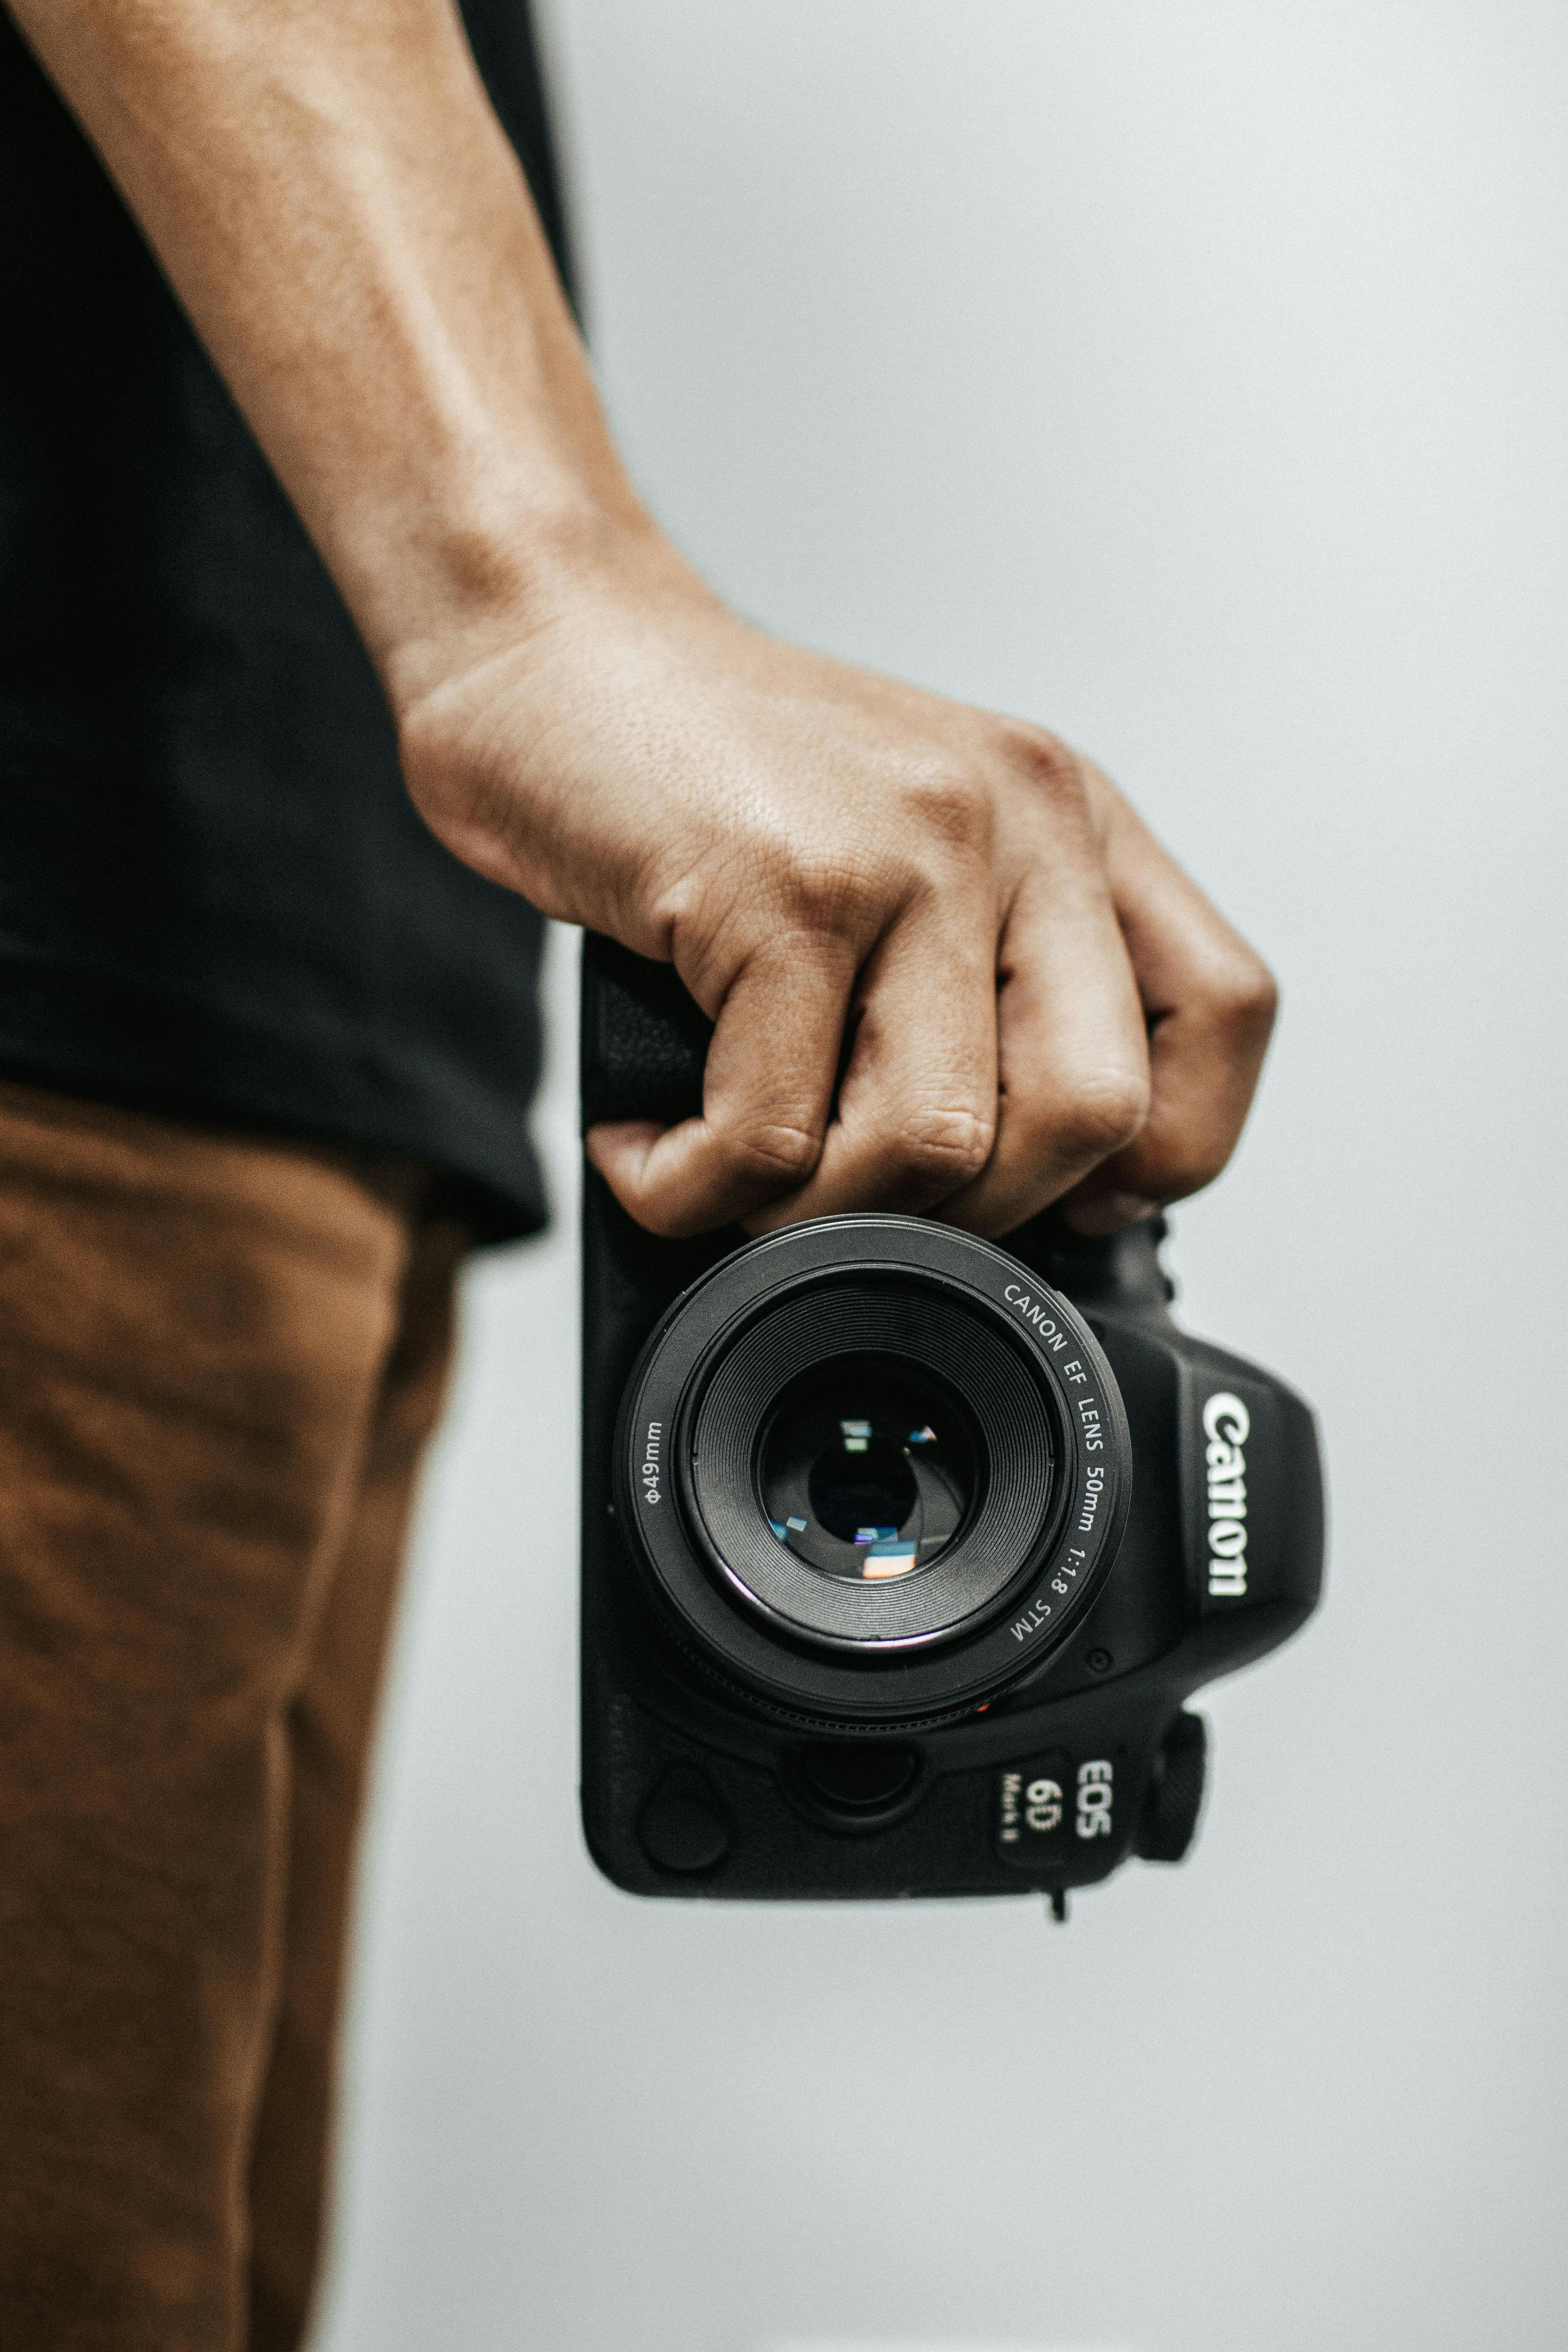 Tìm kiếm những tấm ảnh miễn phí chất lượng cao với Canon để thổi bùng cảm hứng sáng tạo trong công việc của bạn. Với bộ sưu tập ảnh miễn phí của Canon, bạn có thể sử dụng và chia sẻ miễn phí, giúp cho dự án của bạn bắt đầu nhanh chóng và hiệu quả hơn bao giờ hết. Tìm kiếm ảnh miễn phí Canon ngay hôm nay và bắt đầu trải nghiệm tràn ngập cảm hứng.